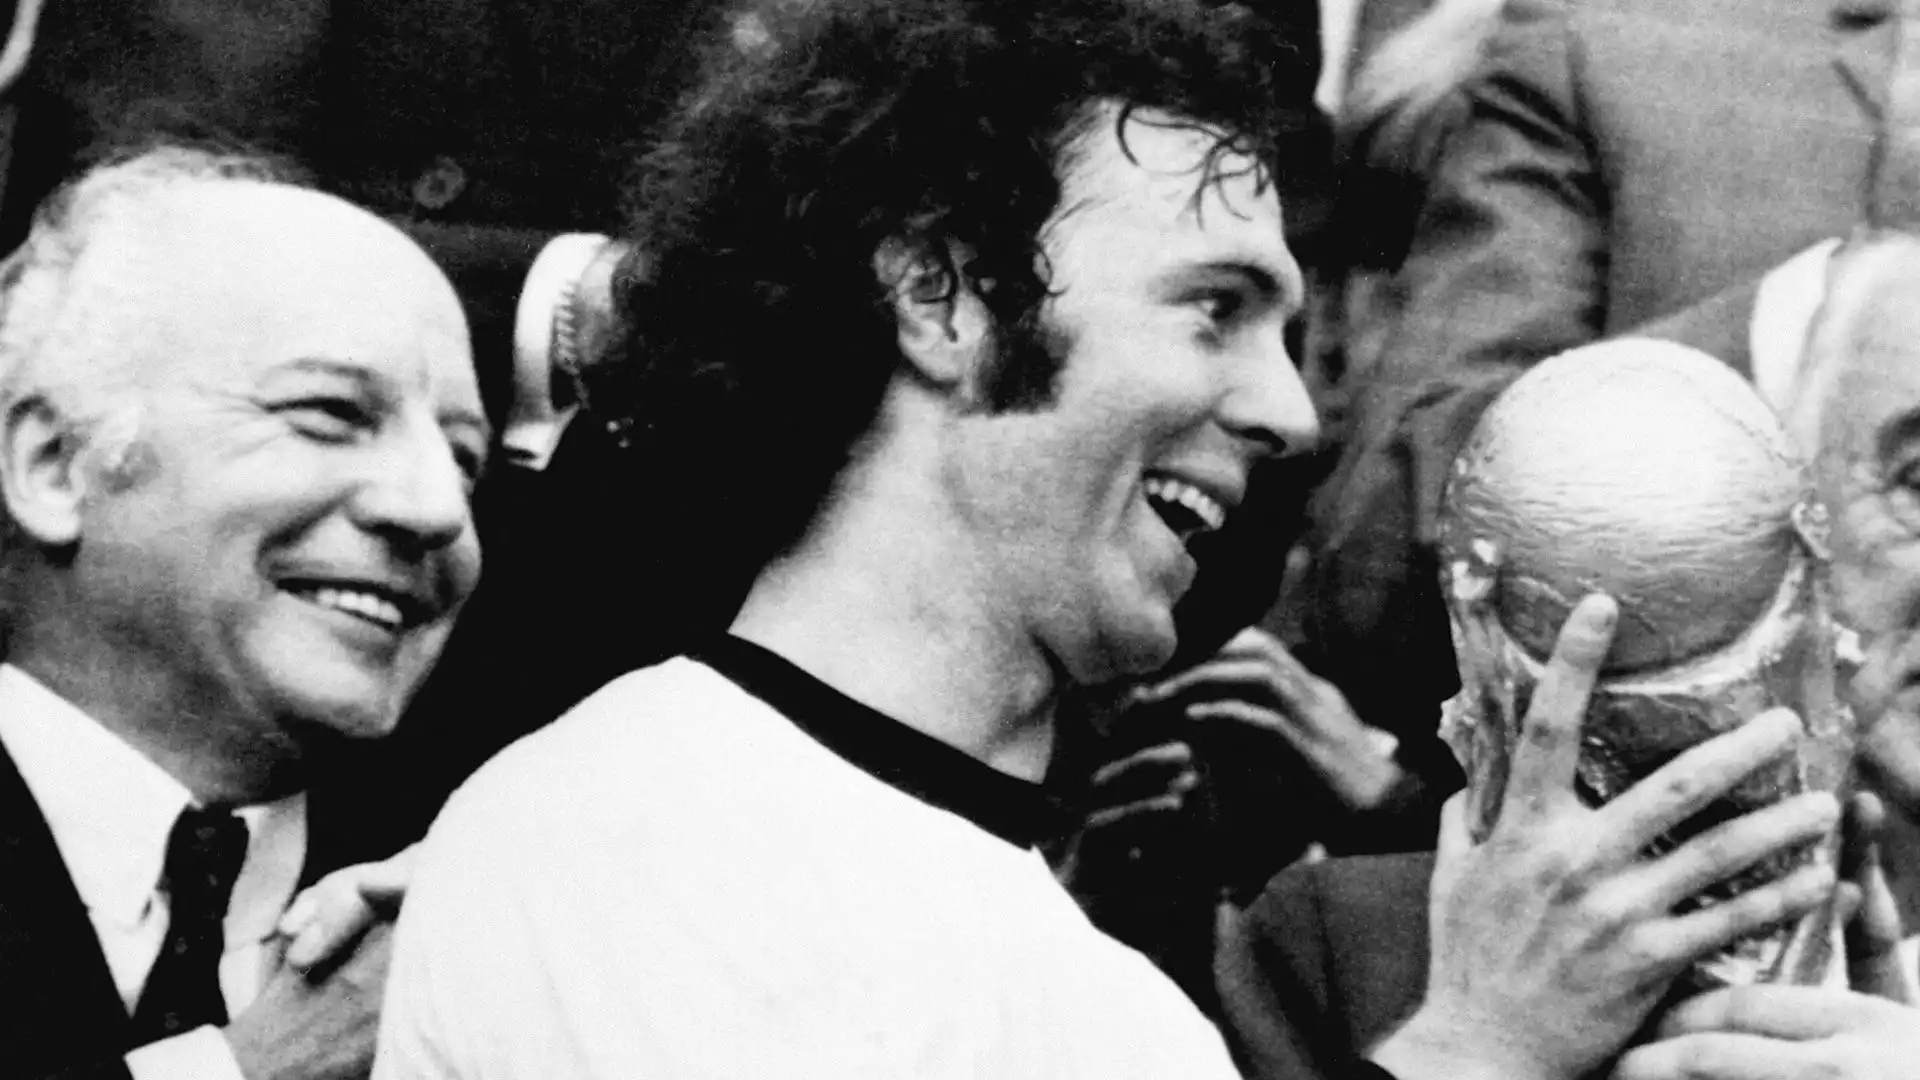 Addio a Franz Beckenbauer, scomparso lunedì